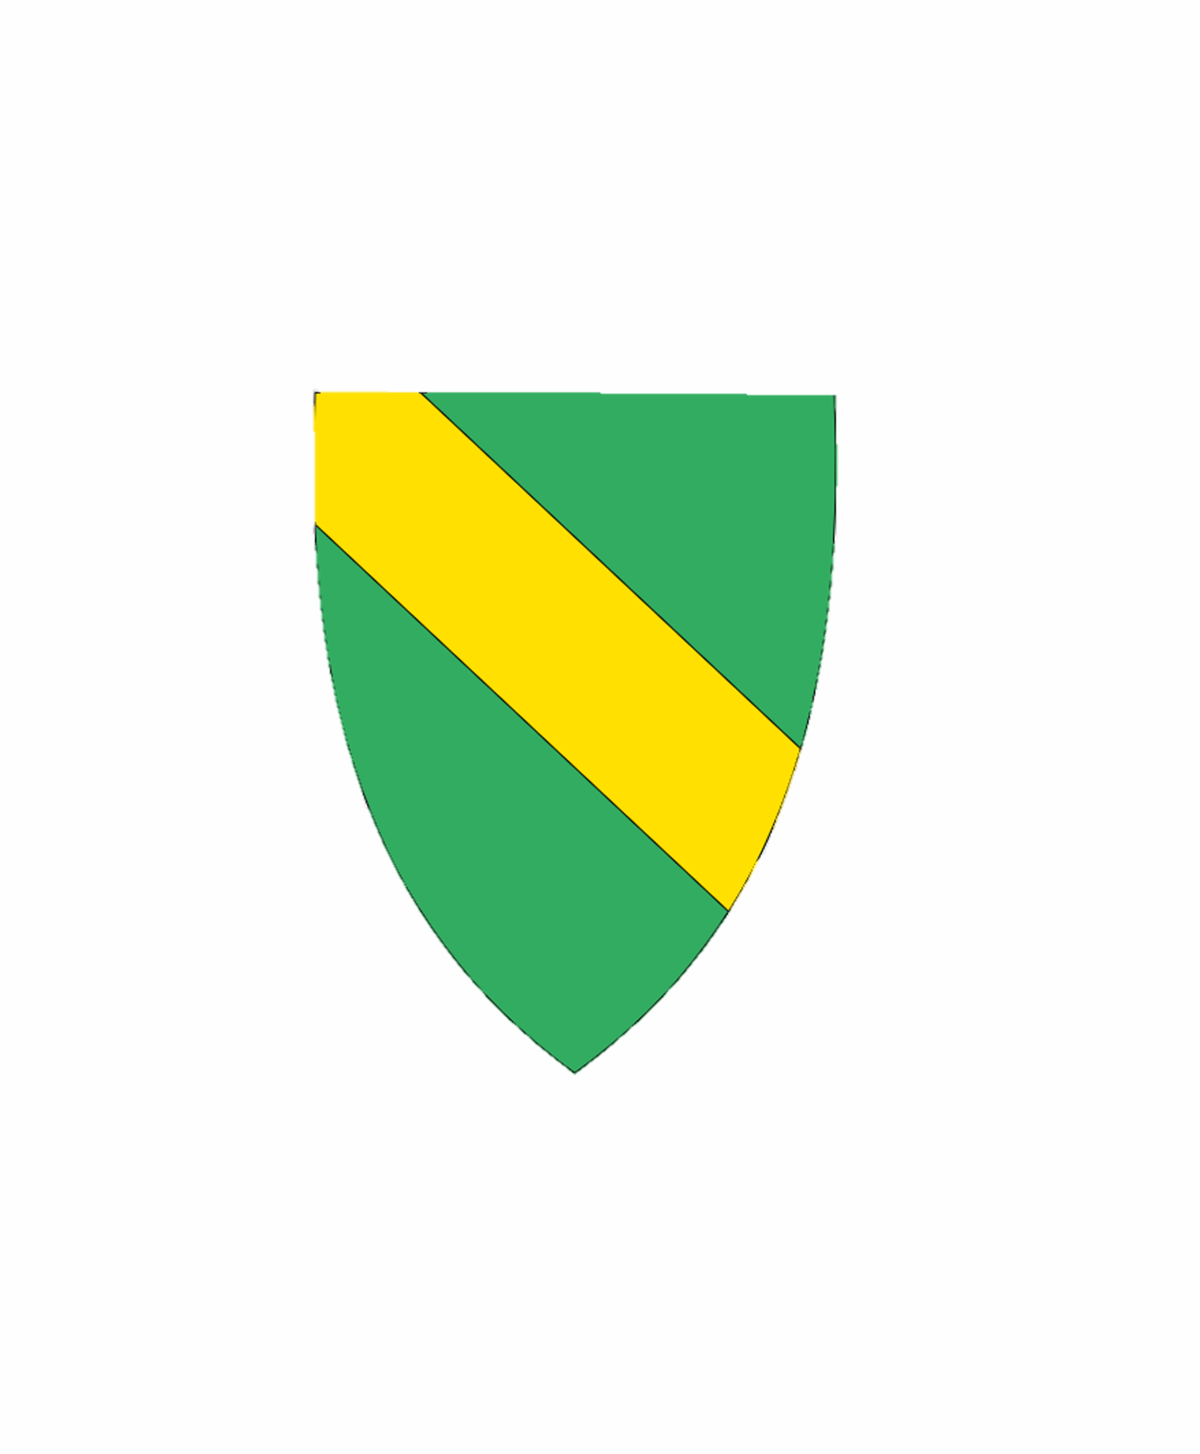 Bilde av Råde kommunevåpen, grønn med gul stipe diagonalt